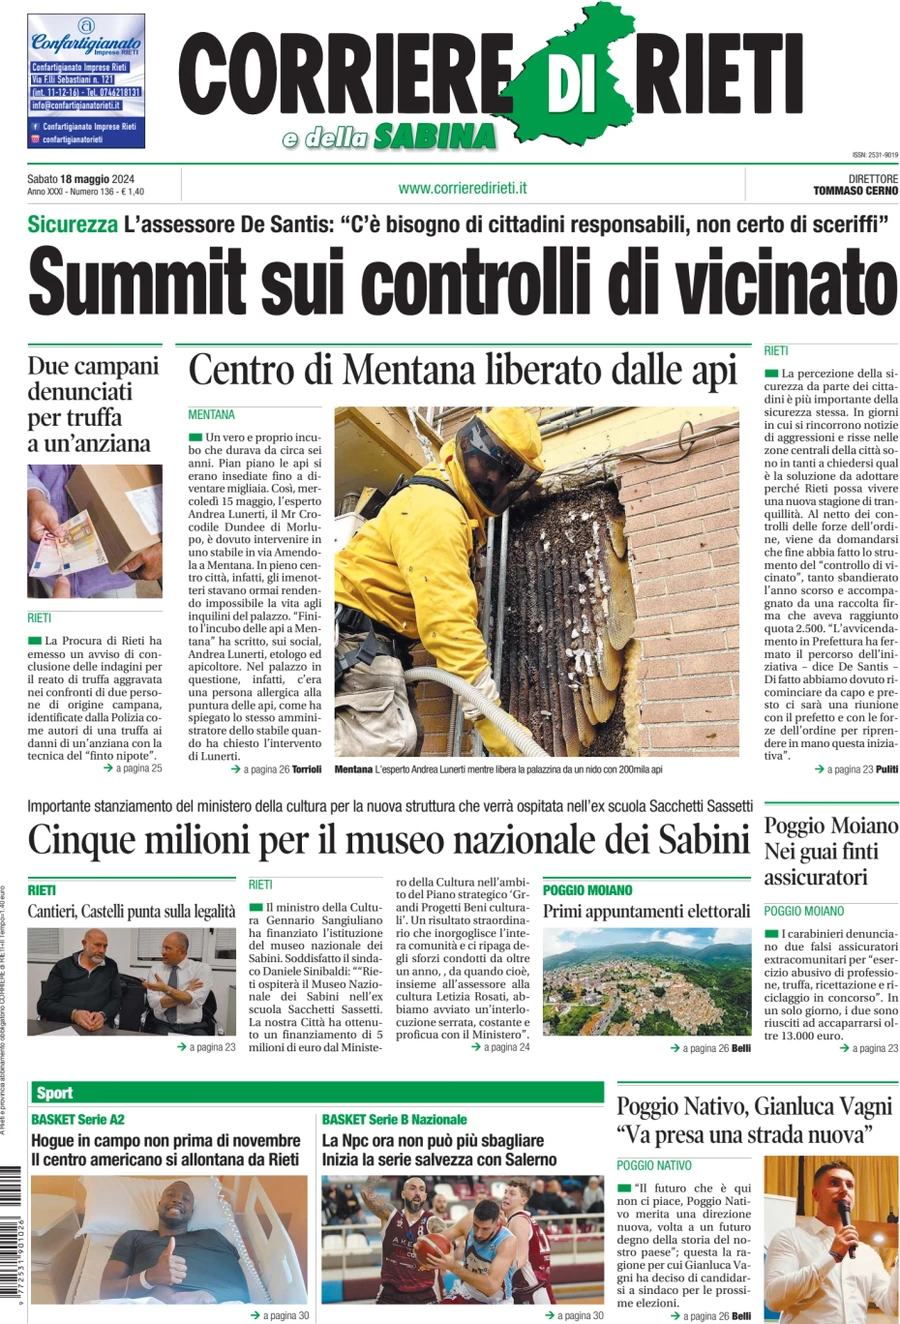 Anteprima prima pagina della rasegna stampa di ieri 2024-05-18 - corriere-di-rieti/